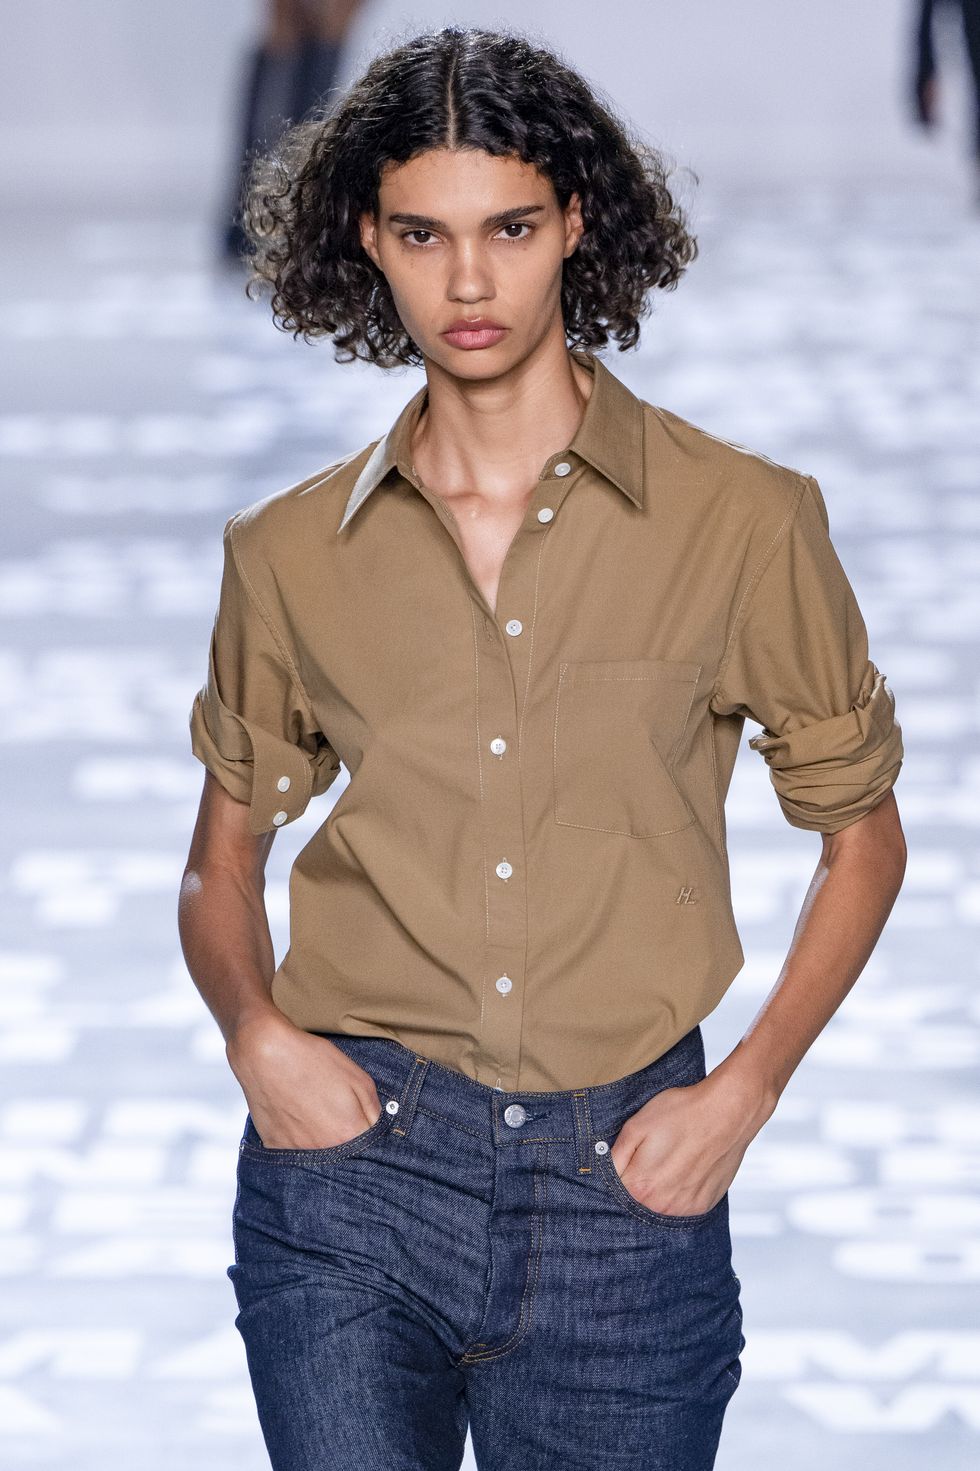 helmut lang model met jeans en blouse